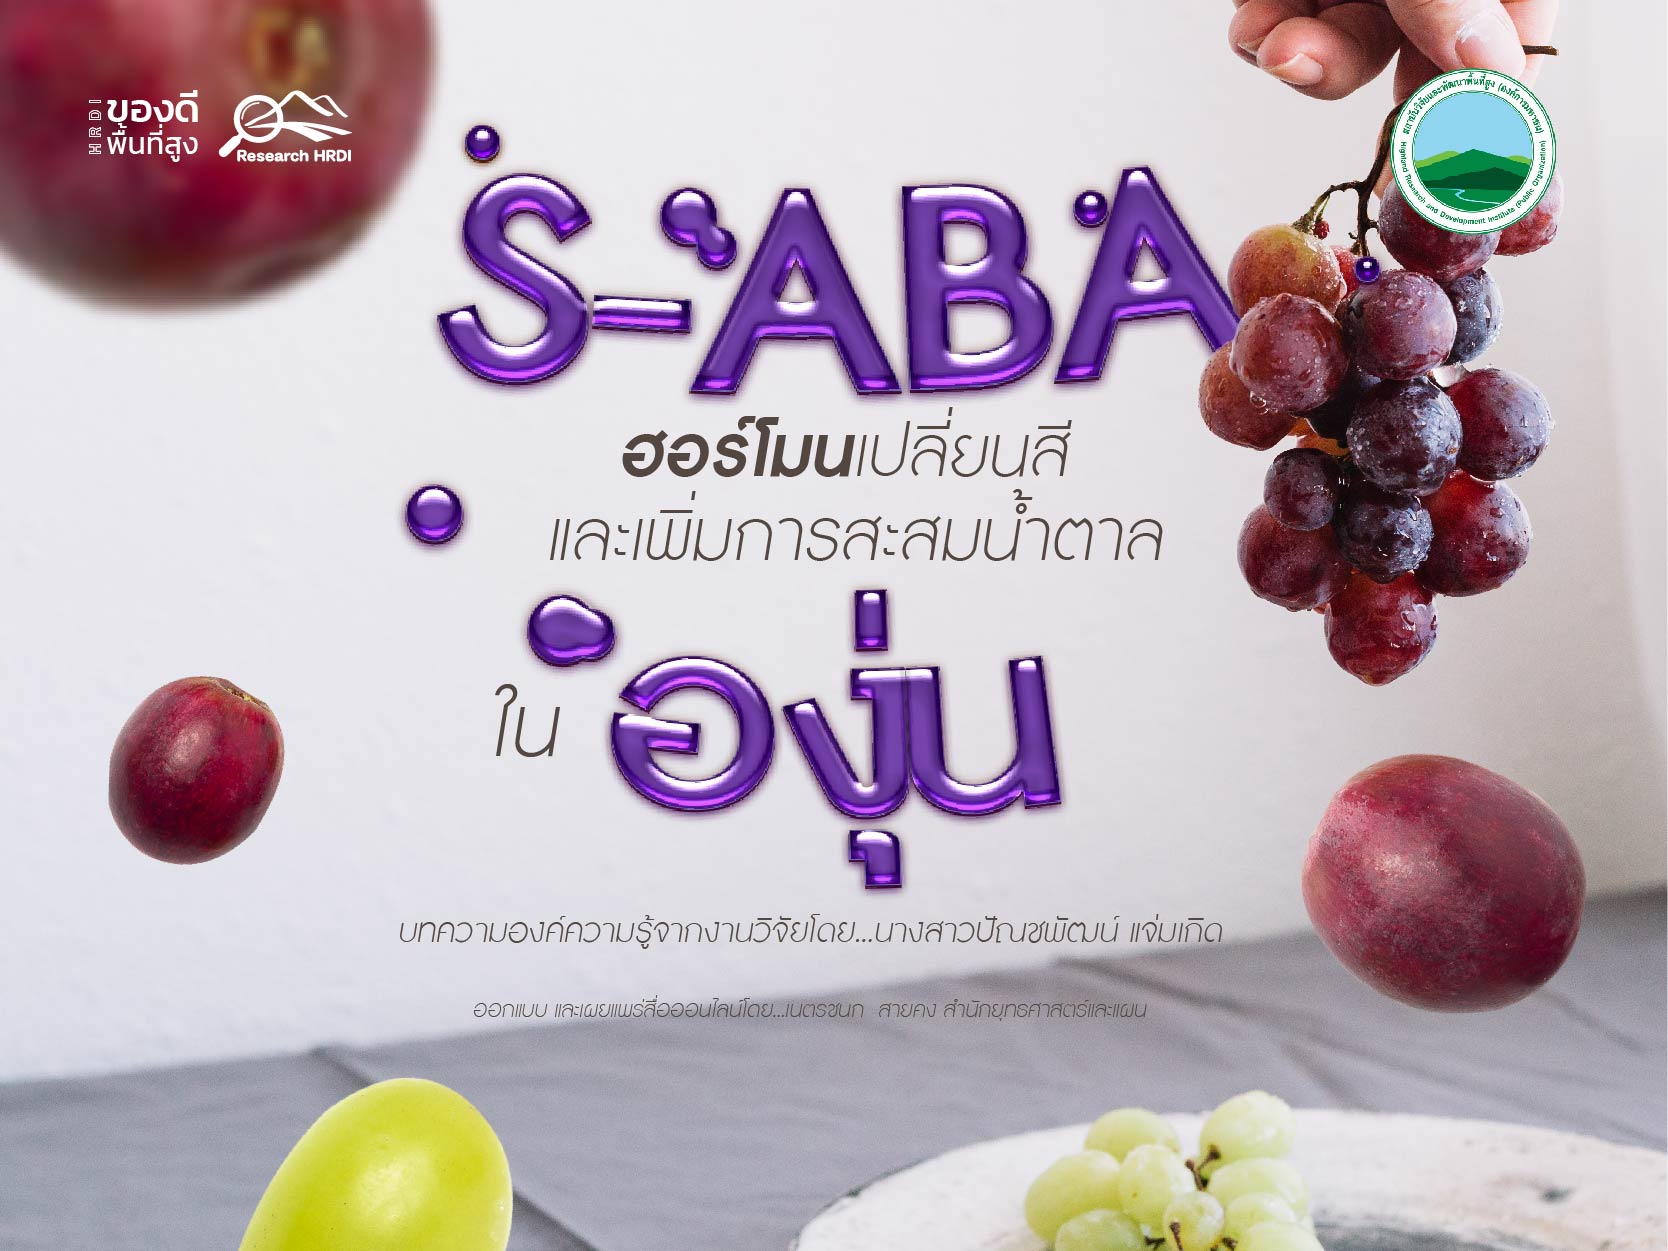 S-ABA ฮอร์โมนเปลี่ยนสีและเพิ่มการสะสมน้ำตาลในองุ่น